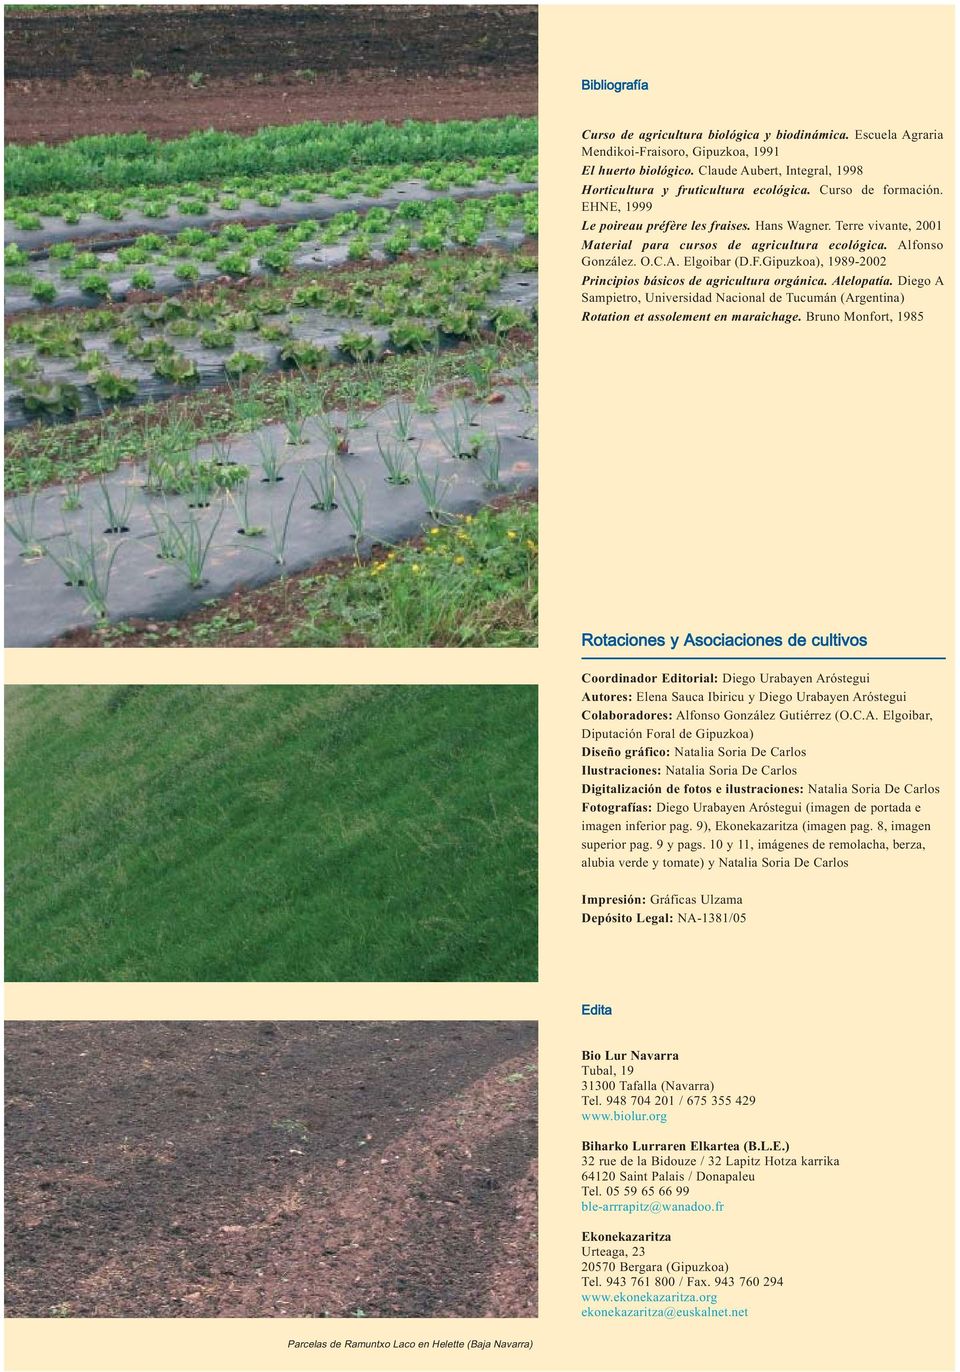 Gipuzkoa), 1989-2002 Principios básicos de agricultura orgánica. Alelopatía. Diego A Sampietro, Universidad Nacional de Tucumán (Argentina) Rotation et assolement en maraichage.